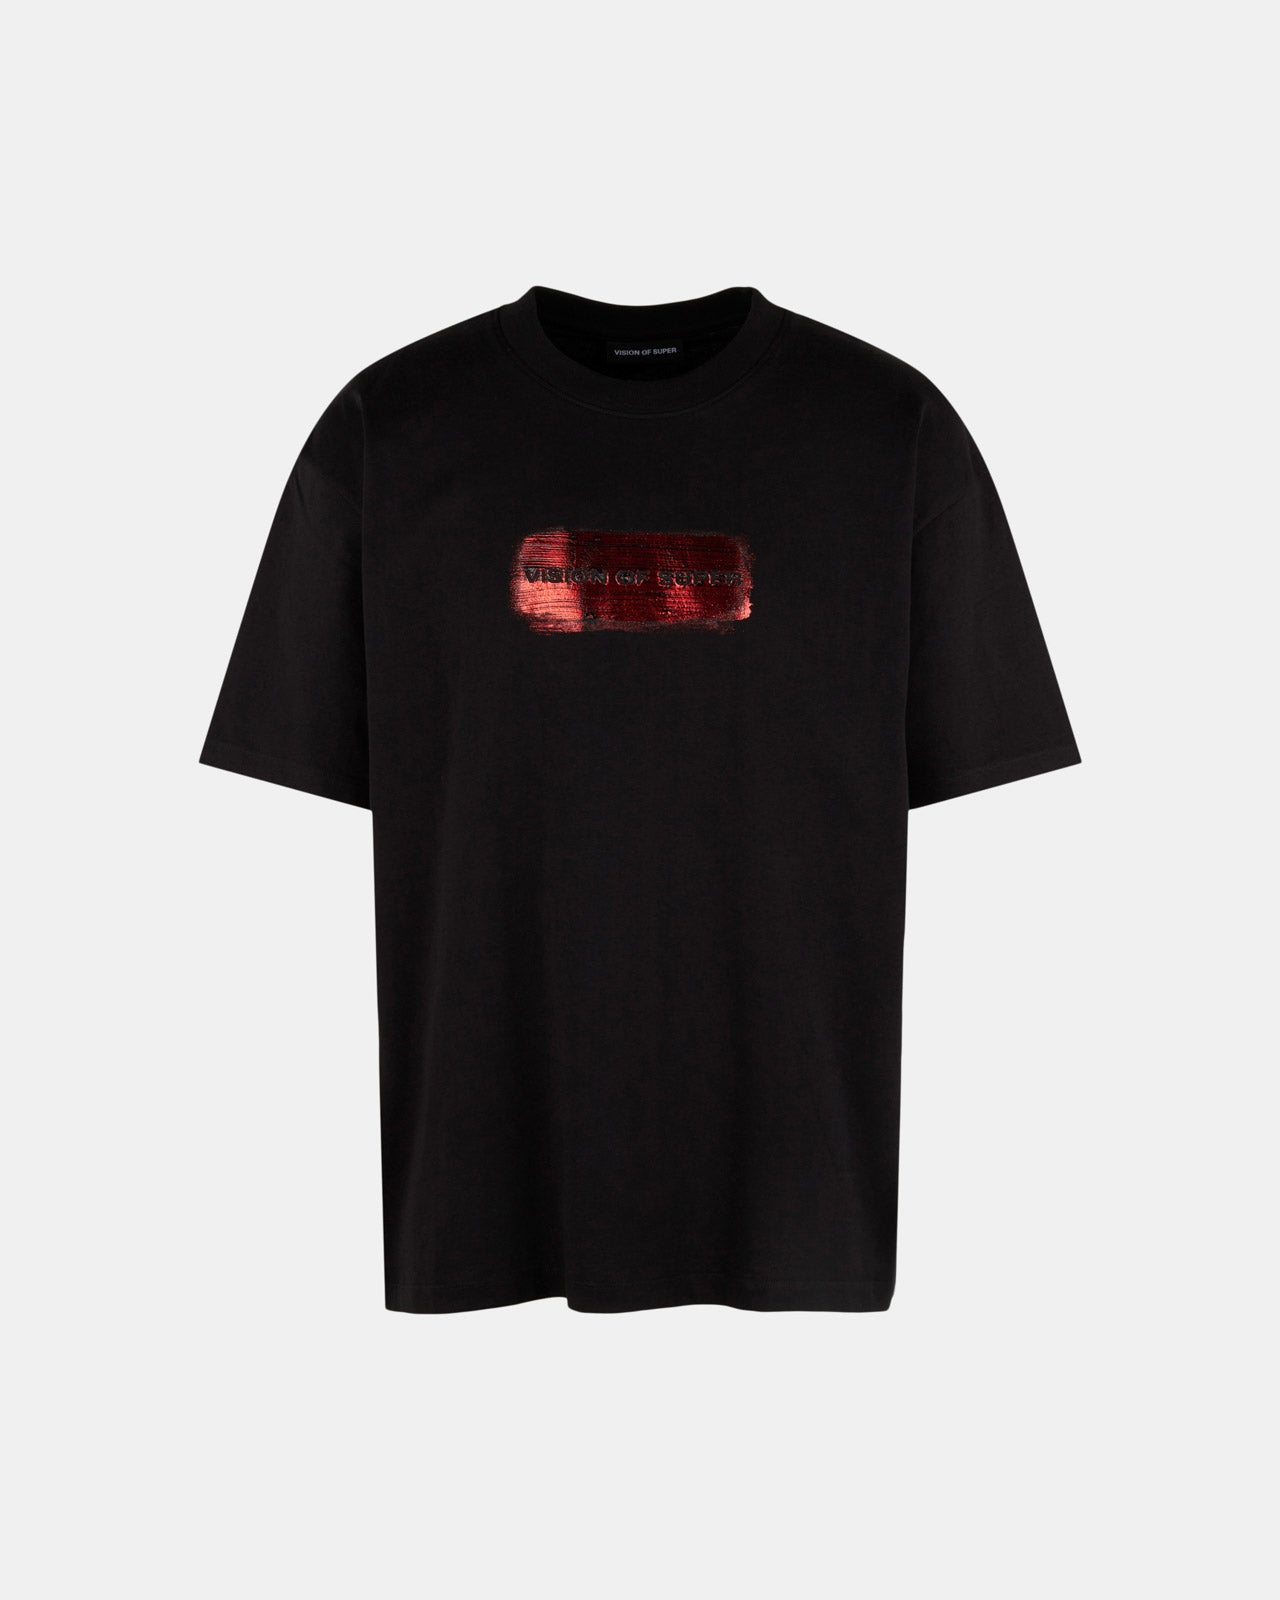 T-shirt Nera con Logo Rosso Spalmato